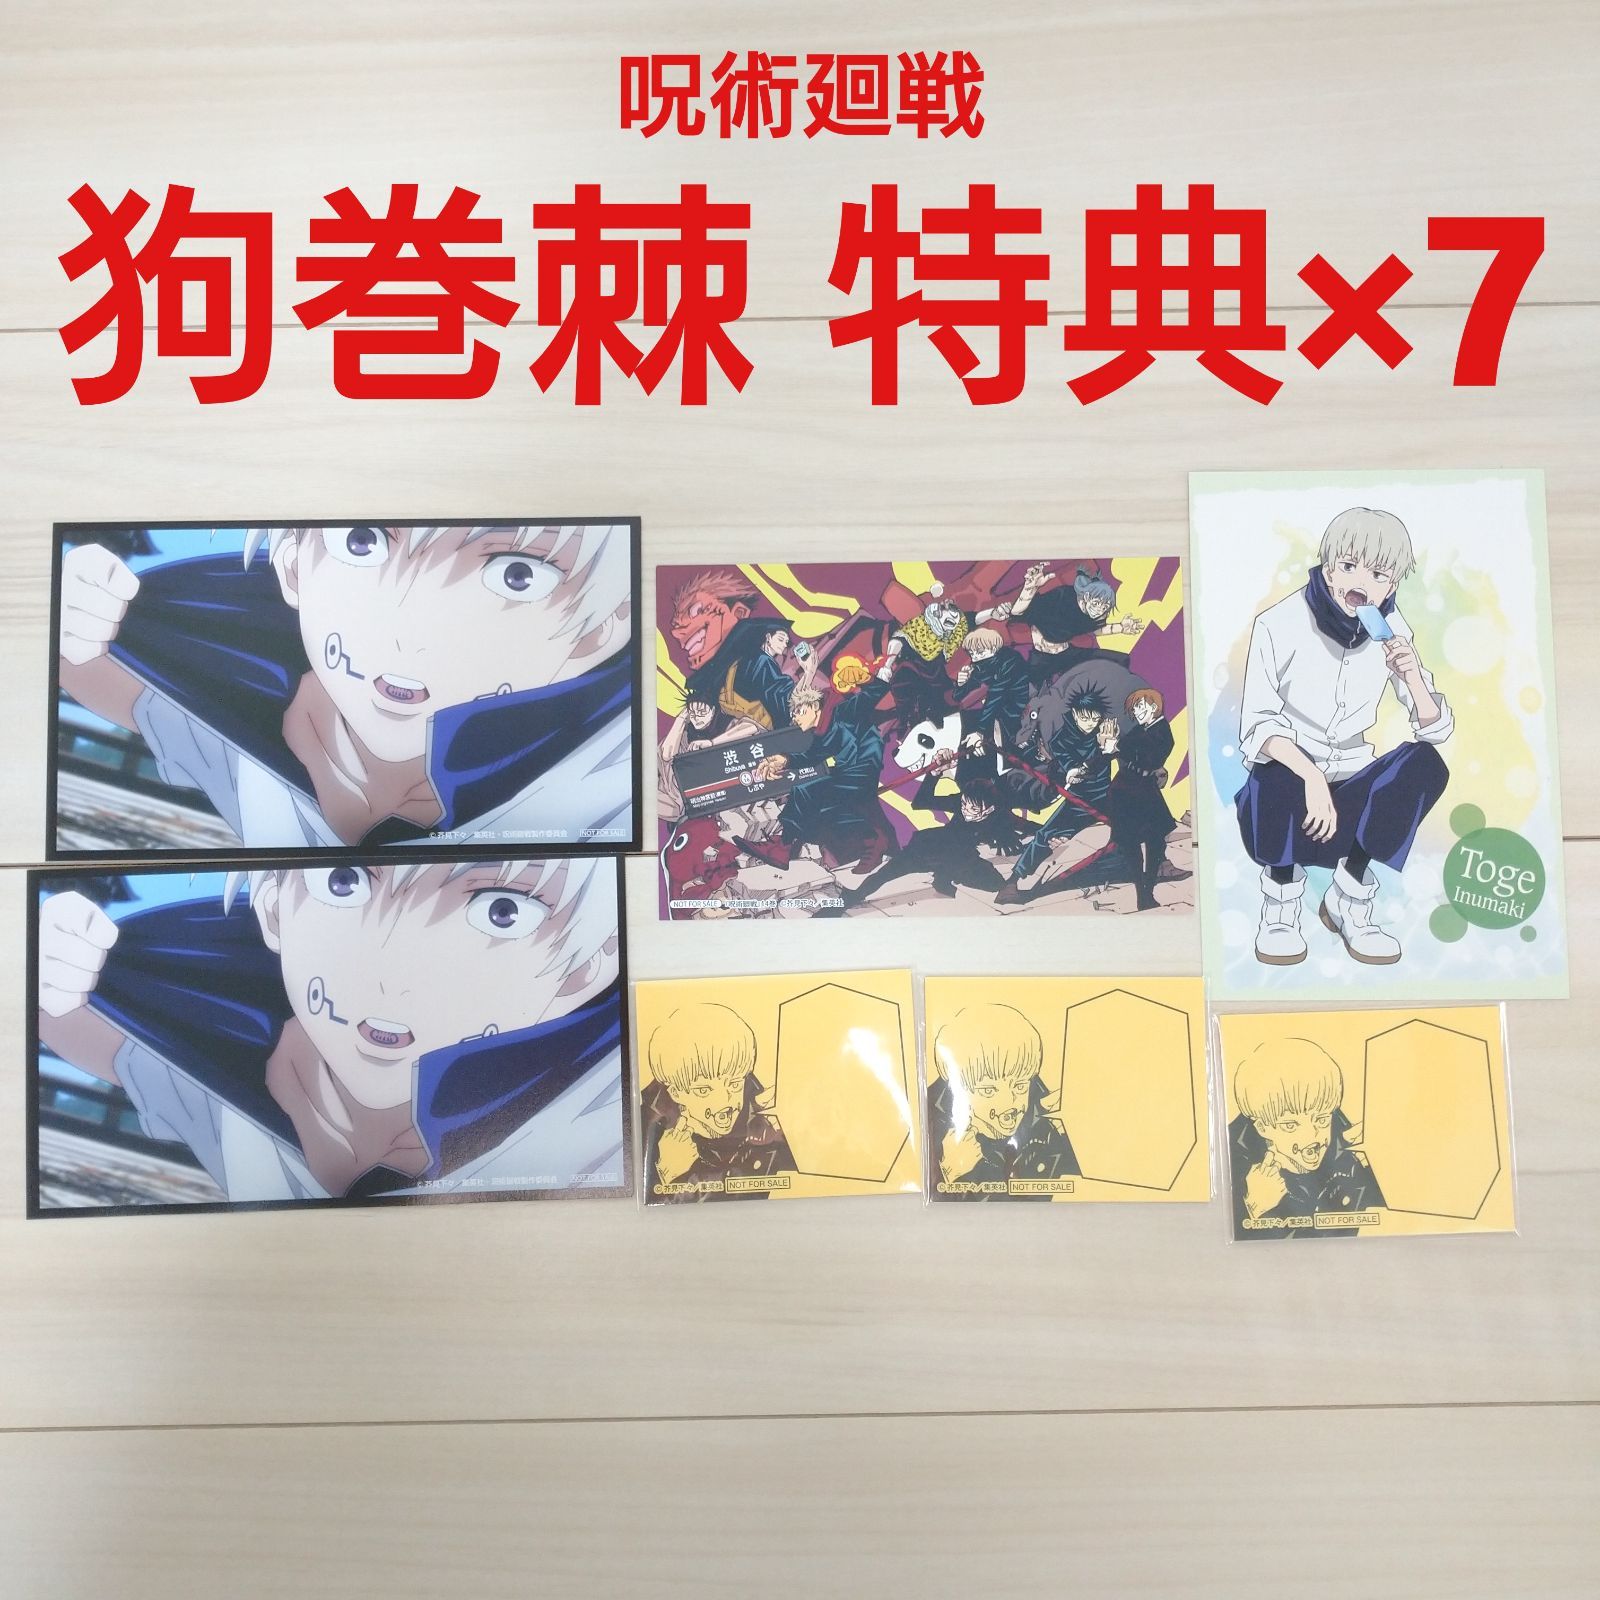 呪術廻戦 書店特典×5 狗巻棘 グッズセット アニメイラストカレンダー